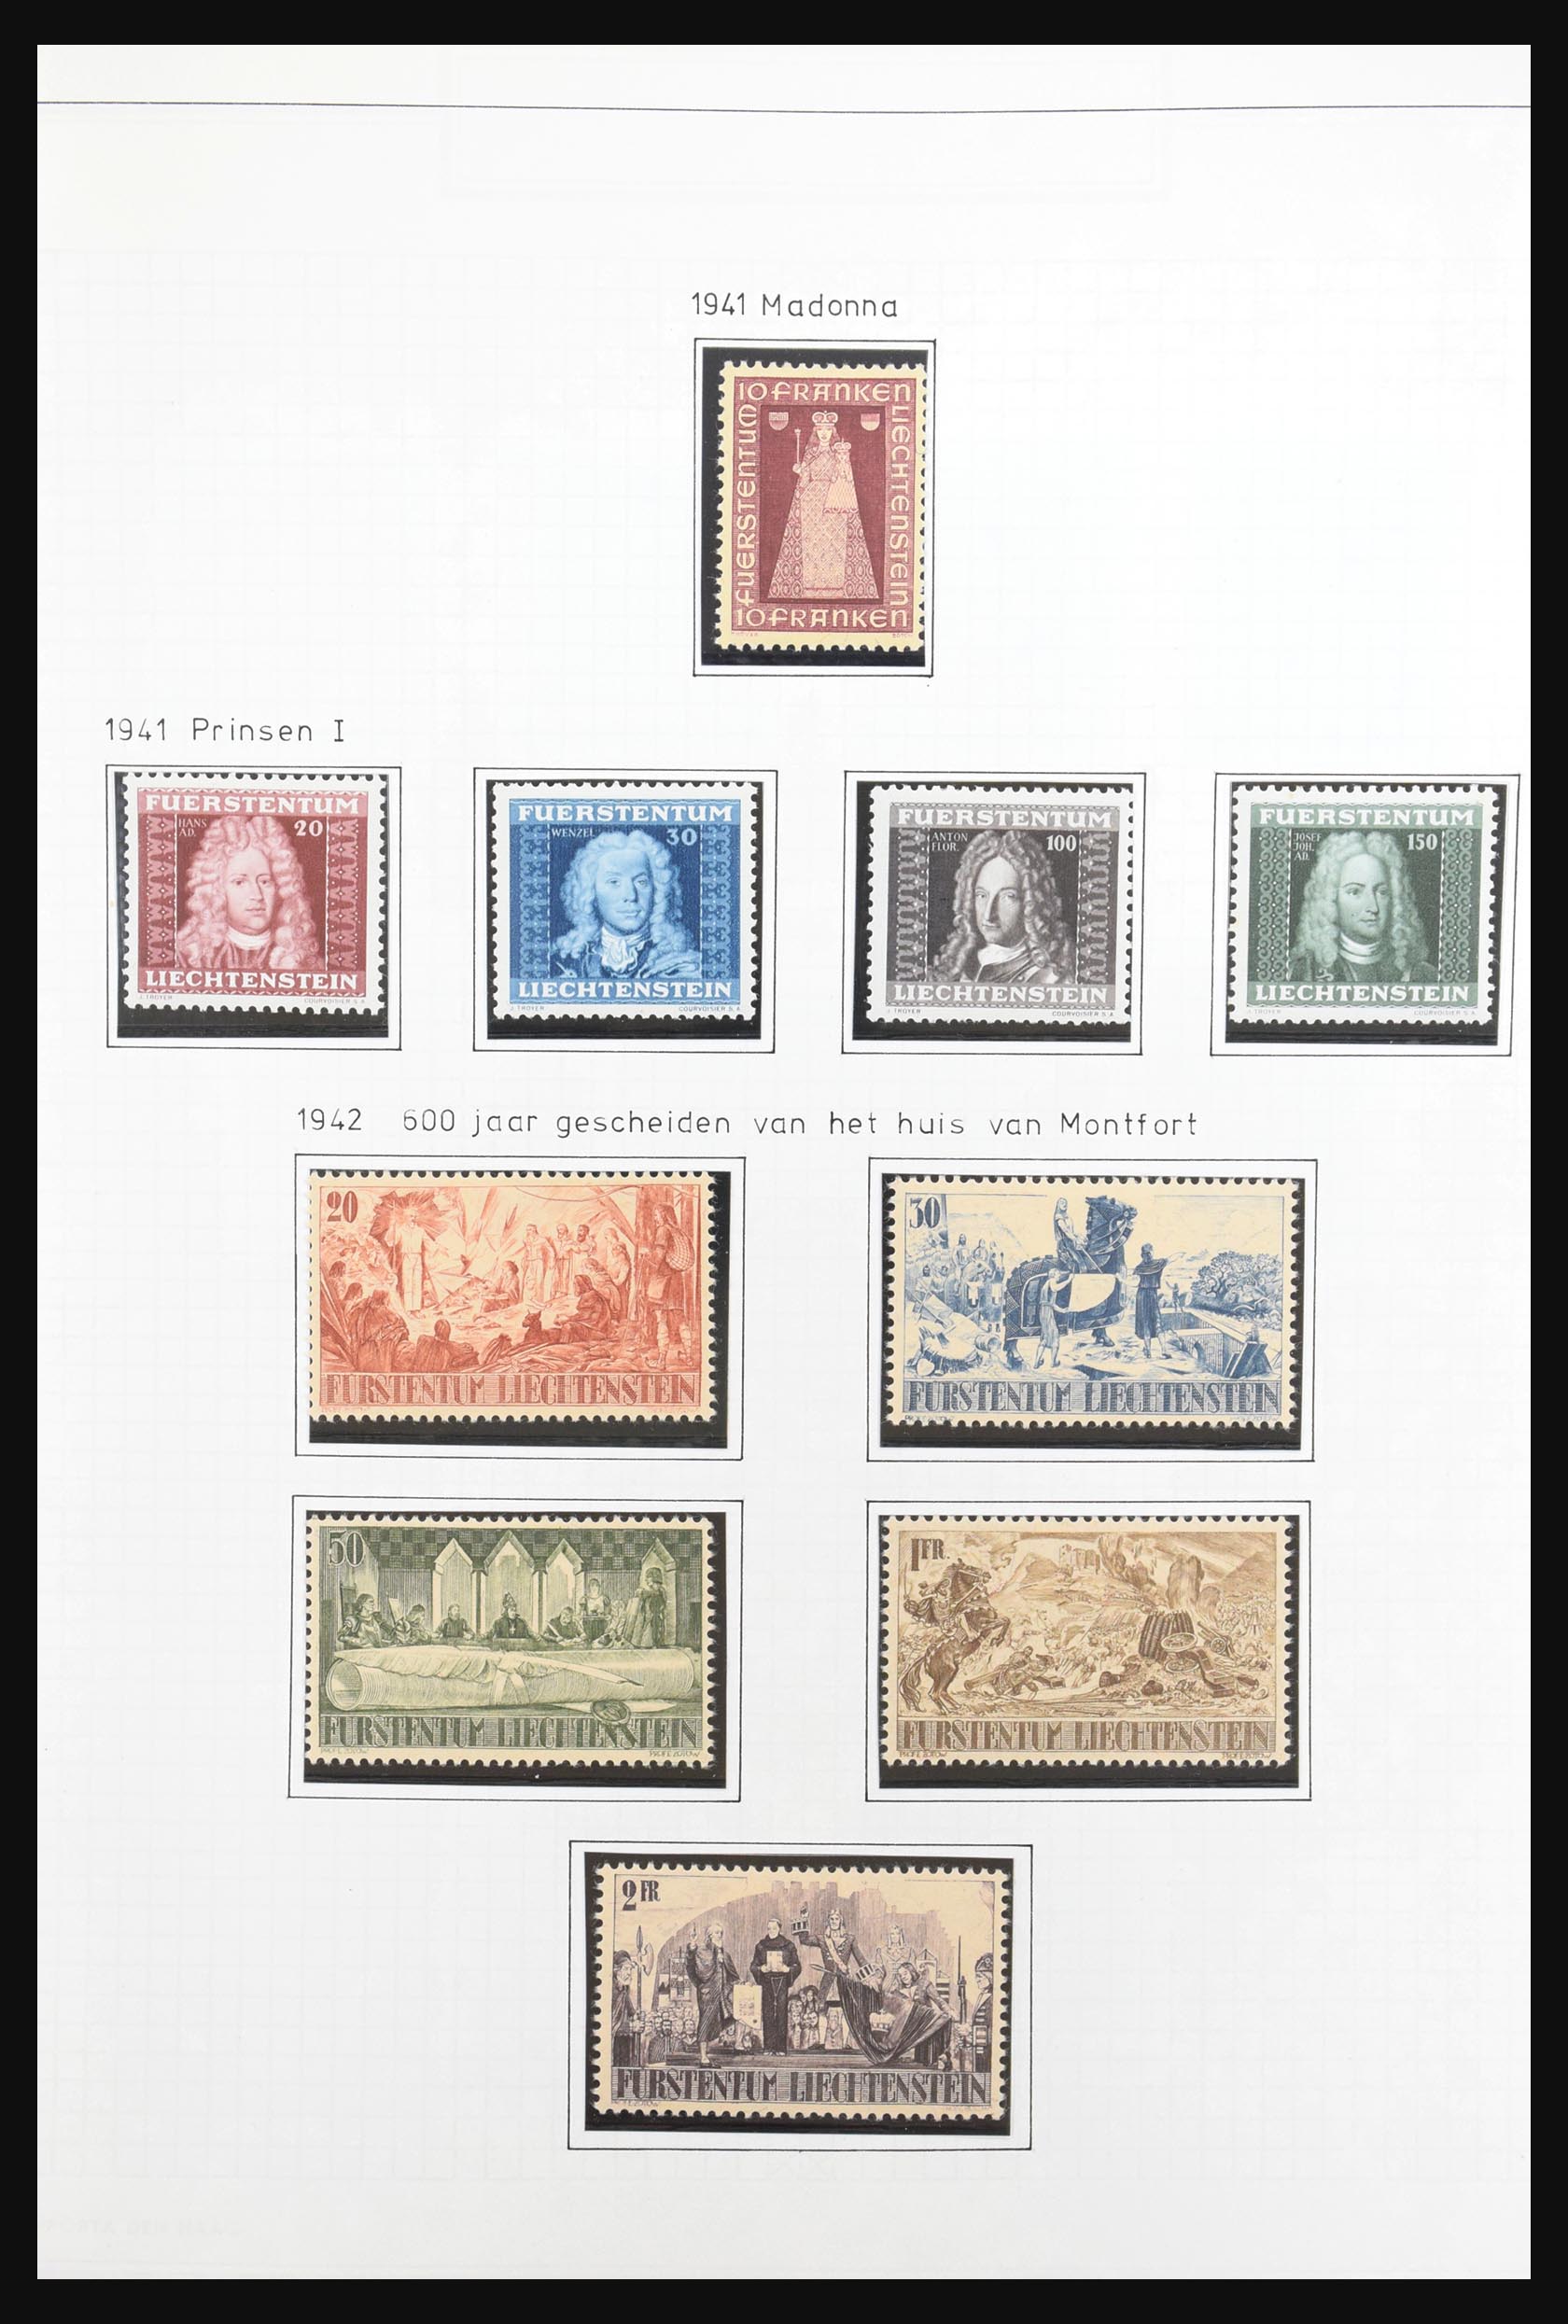 31131 017 - 31131 Liechtenstein 1912-2013.